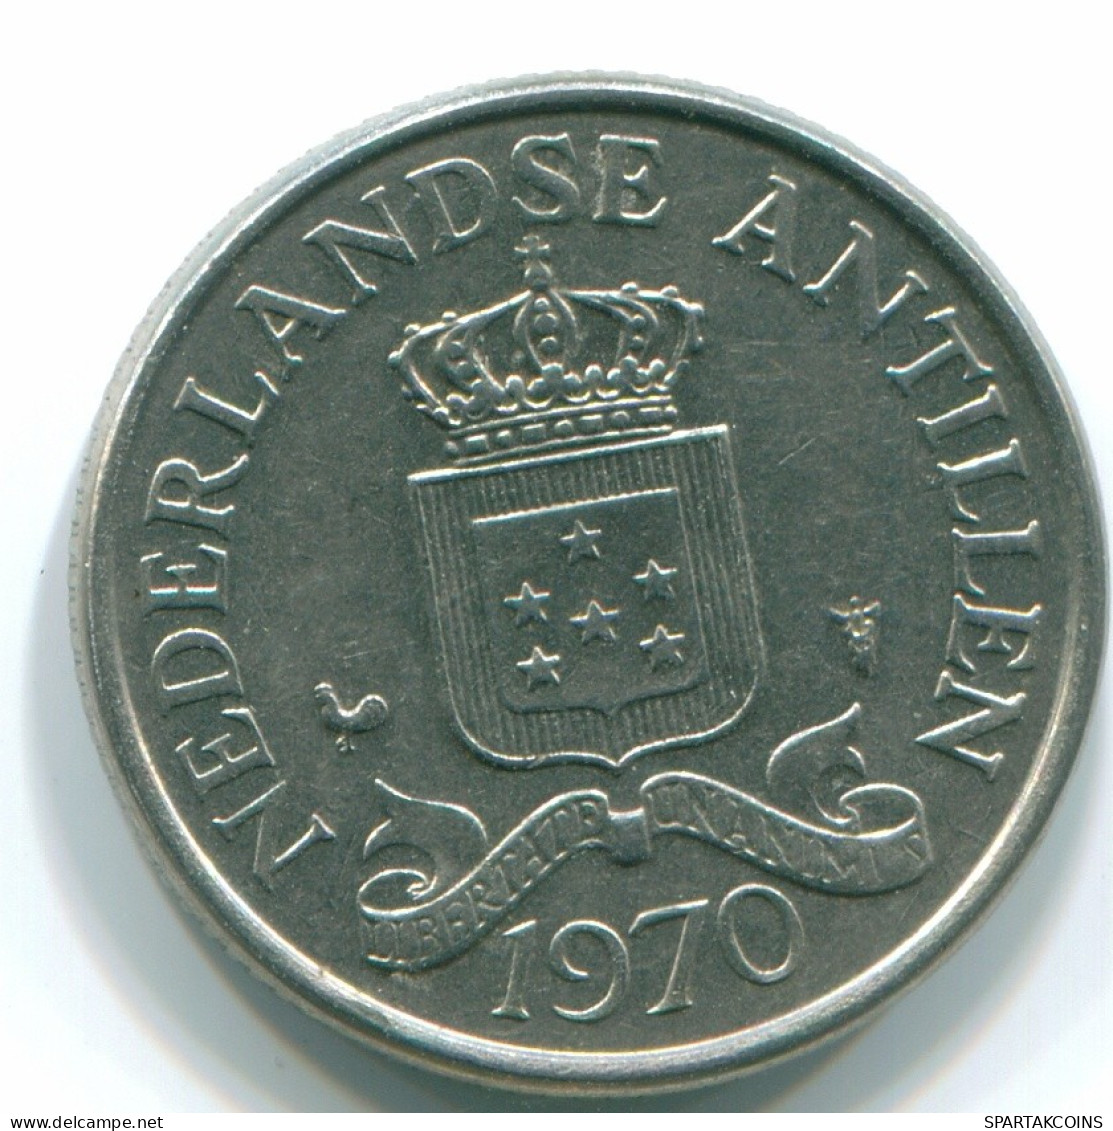 25 CENTS 1970 NIEDERLÄNDISCHE ANTILLEN Nickel Koloniale Münze #S11452.D.A - Antilles Néerlandaises